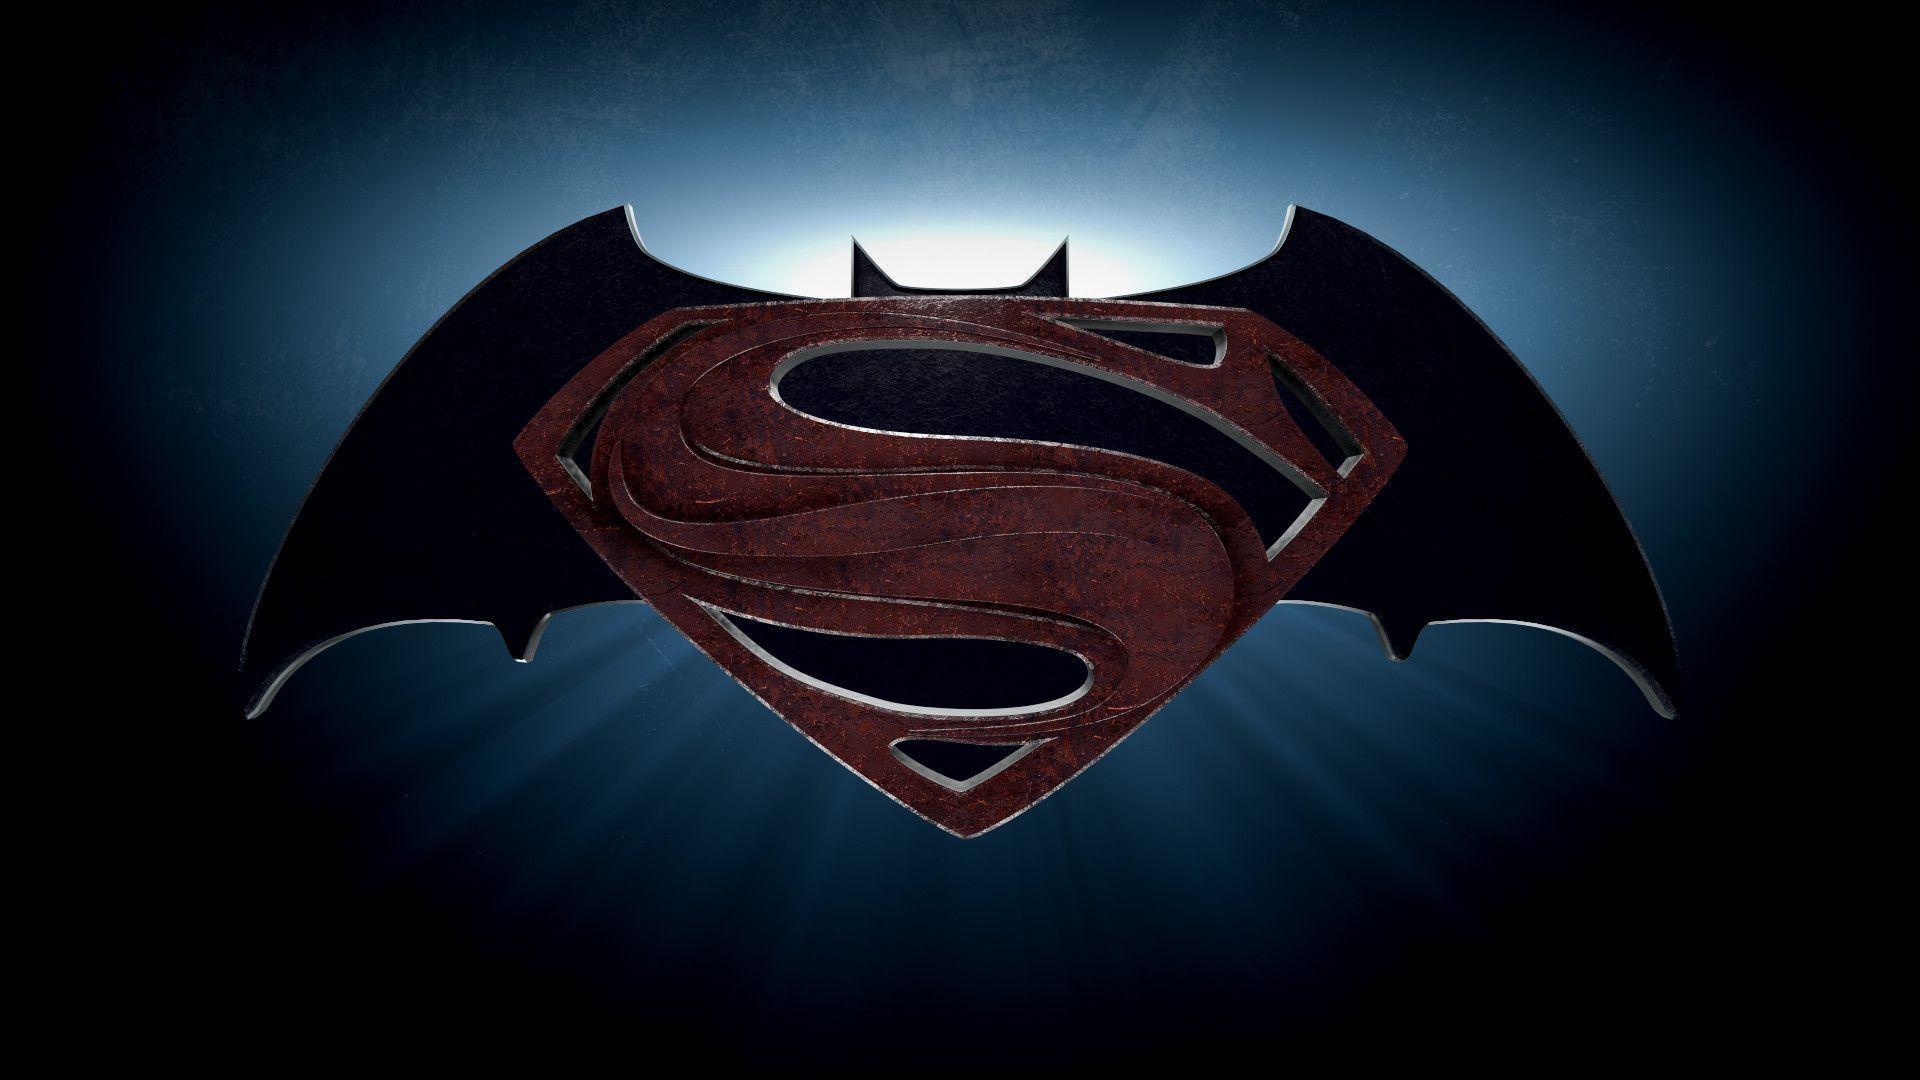 1000+ image about Batman vs Superman